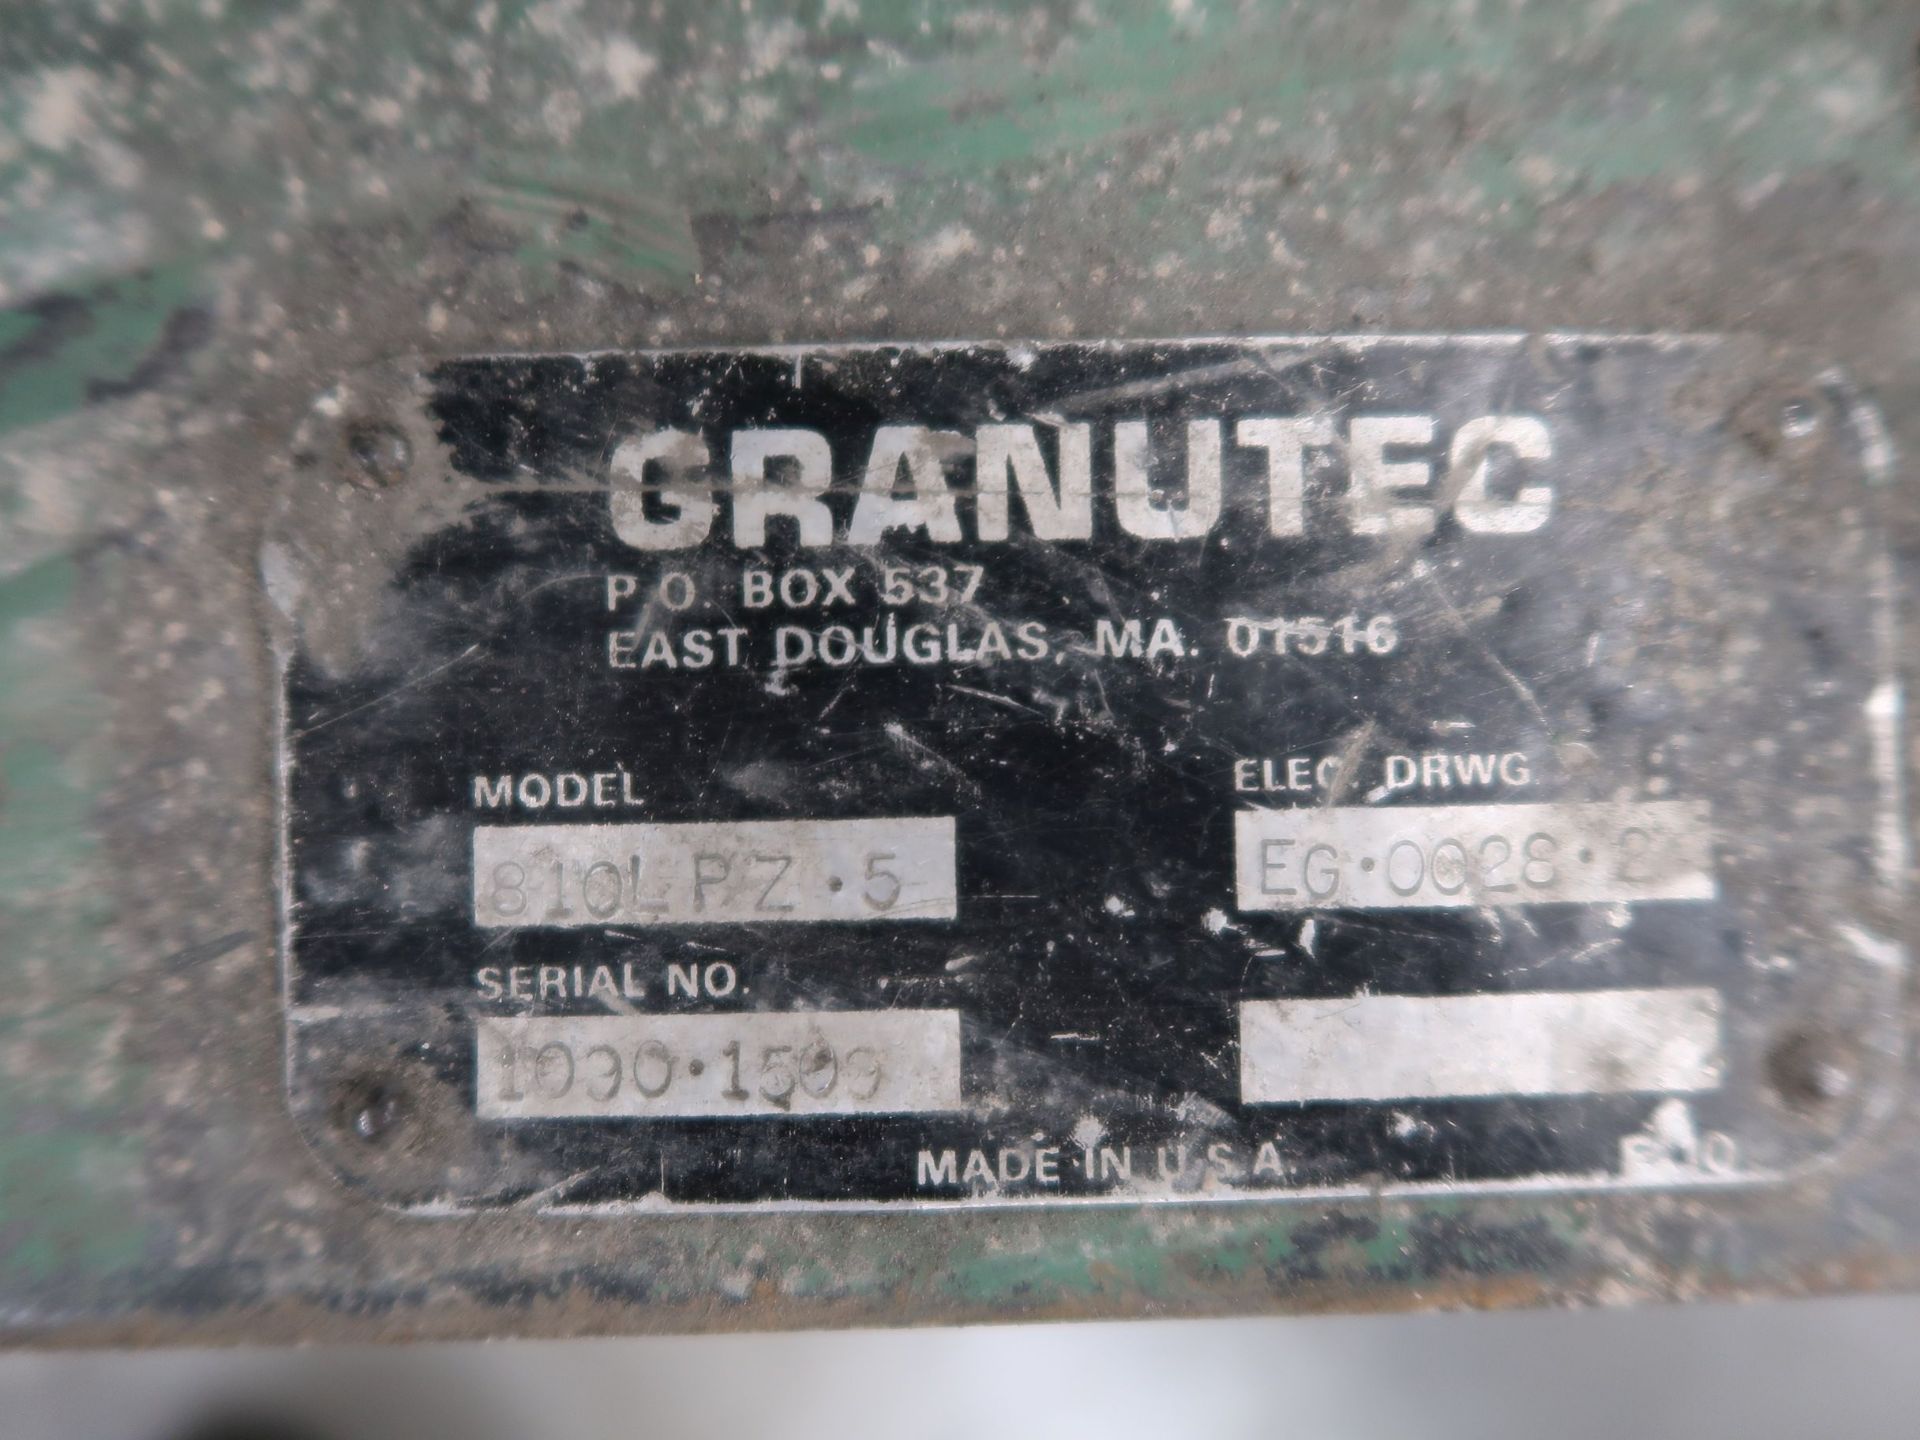 5 HP GRANUTEC MODEL 810LPZ-5 GRANULATOR; S/N 1090-1509 - Image 4 of 4